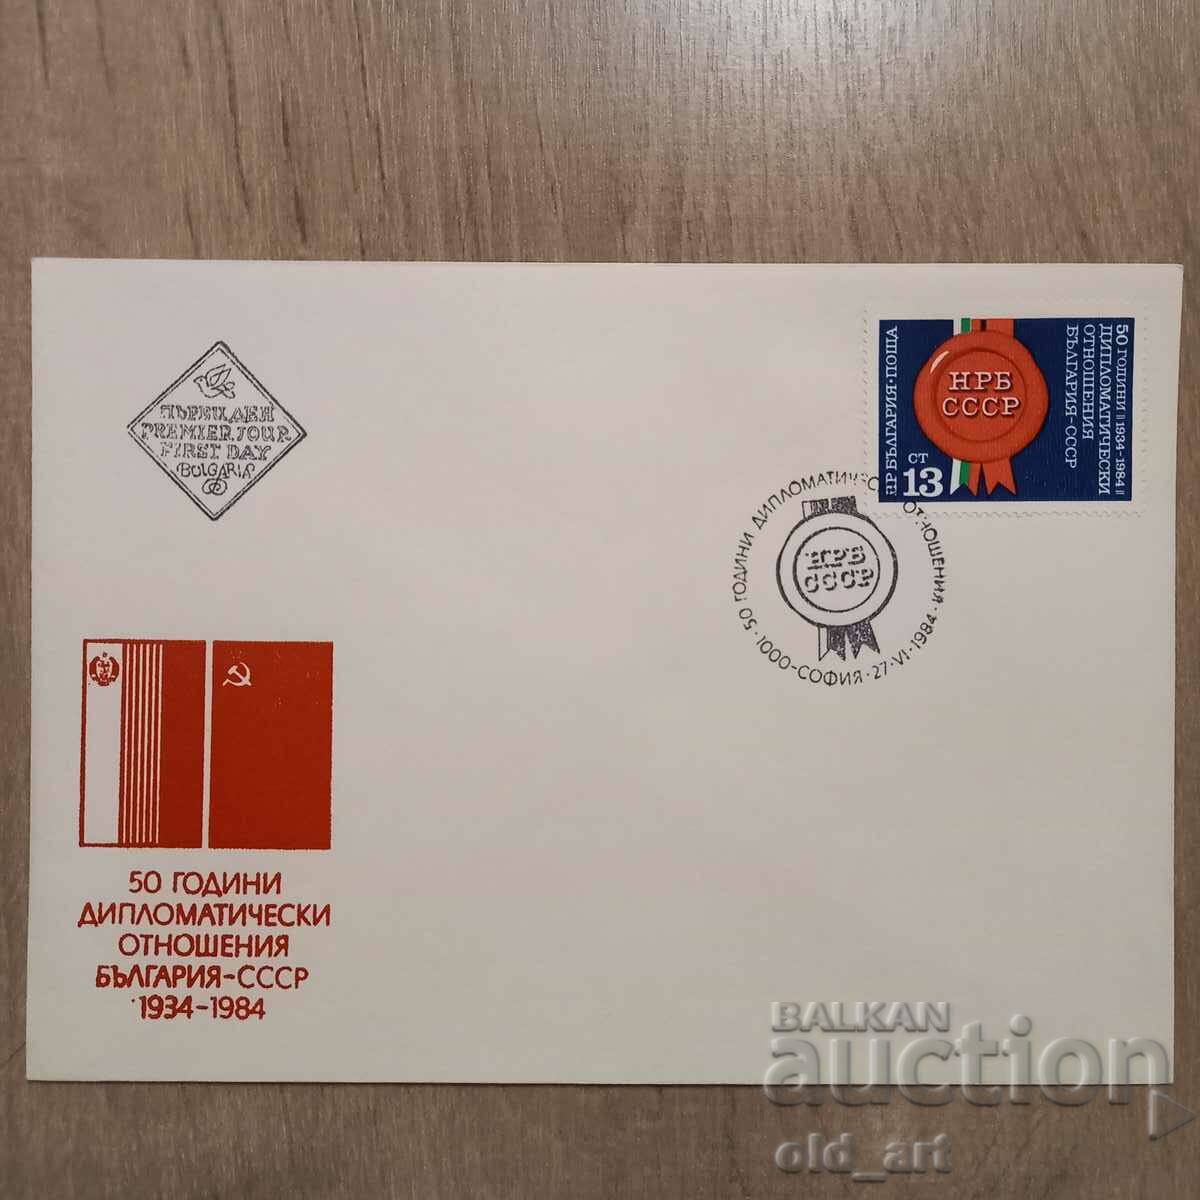 Plic poștal - 50 de ani diplomat. relaţiile Bulgaria - URSS